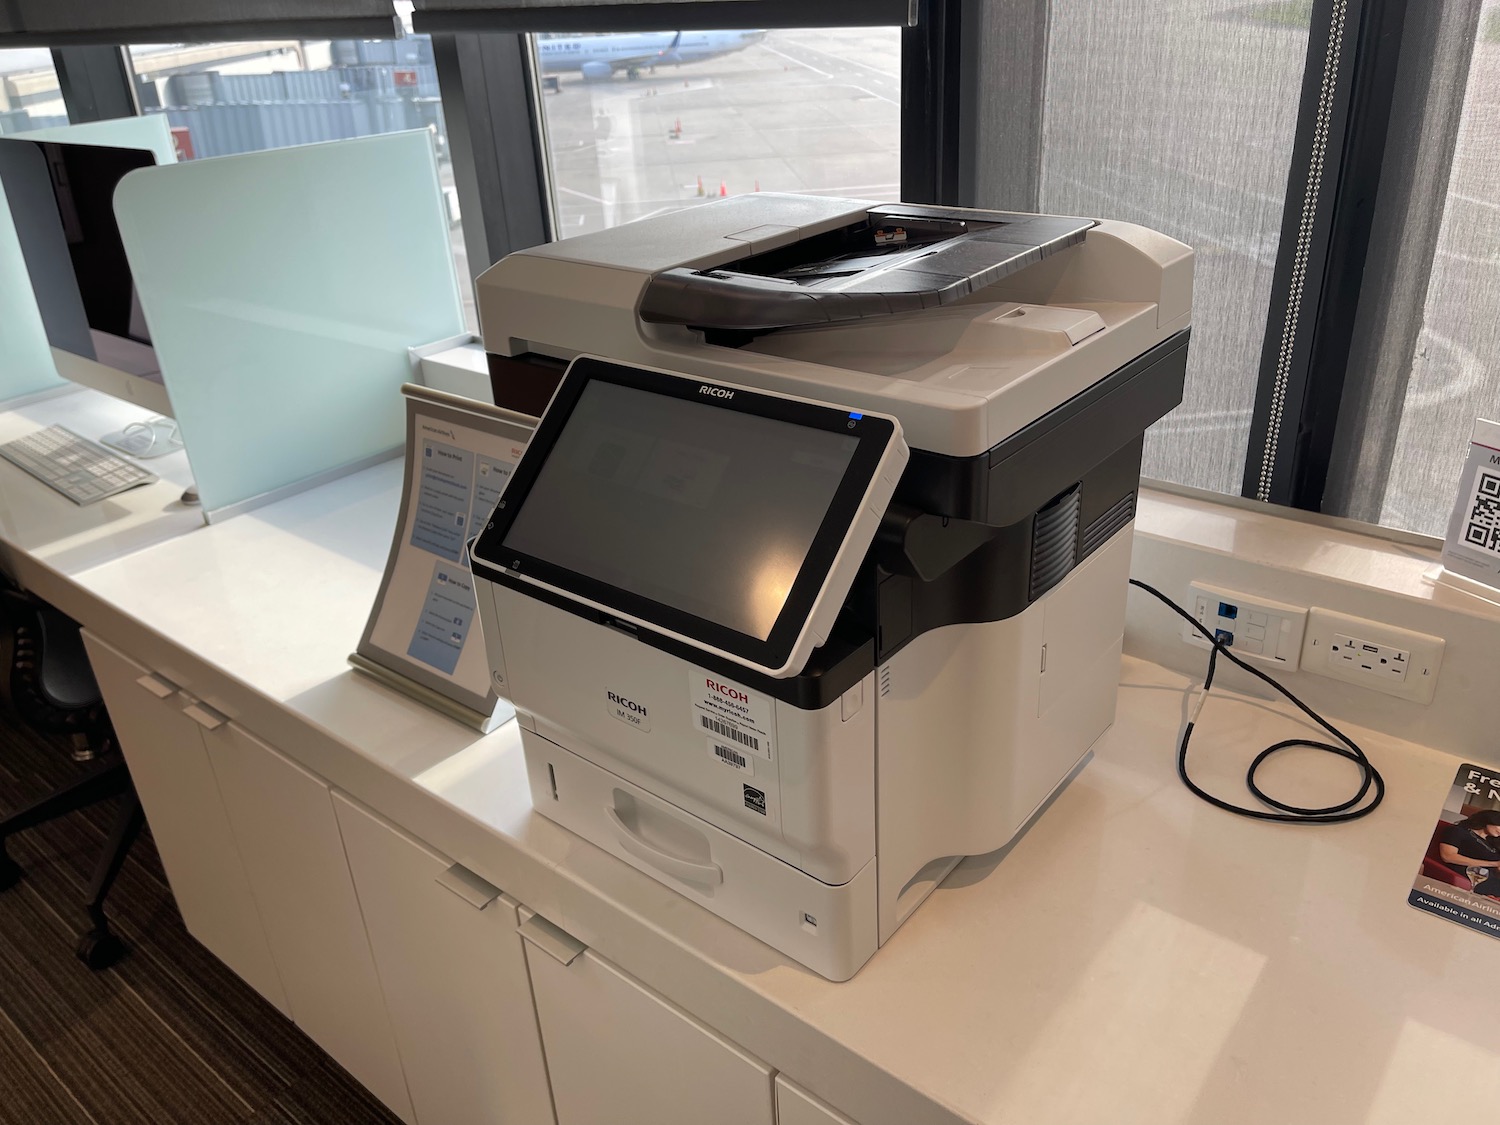 a printer on a counter